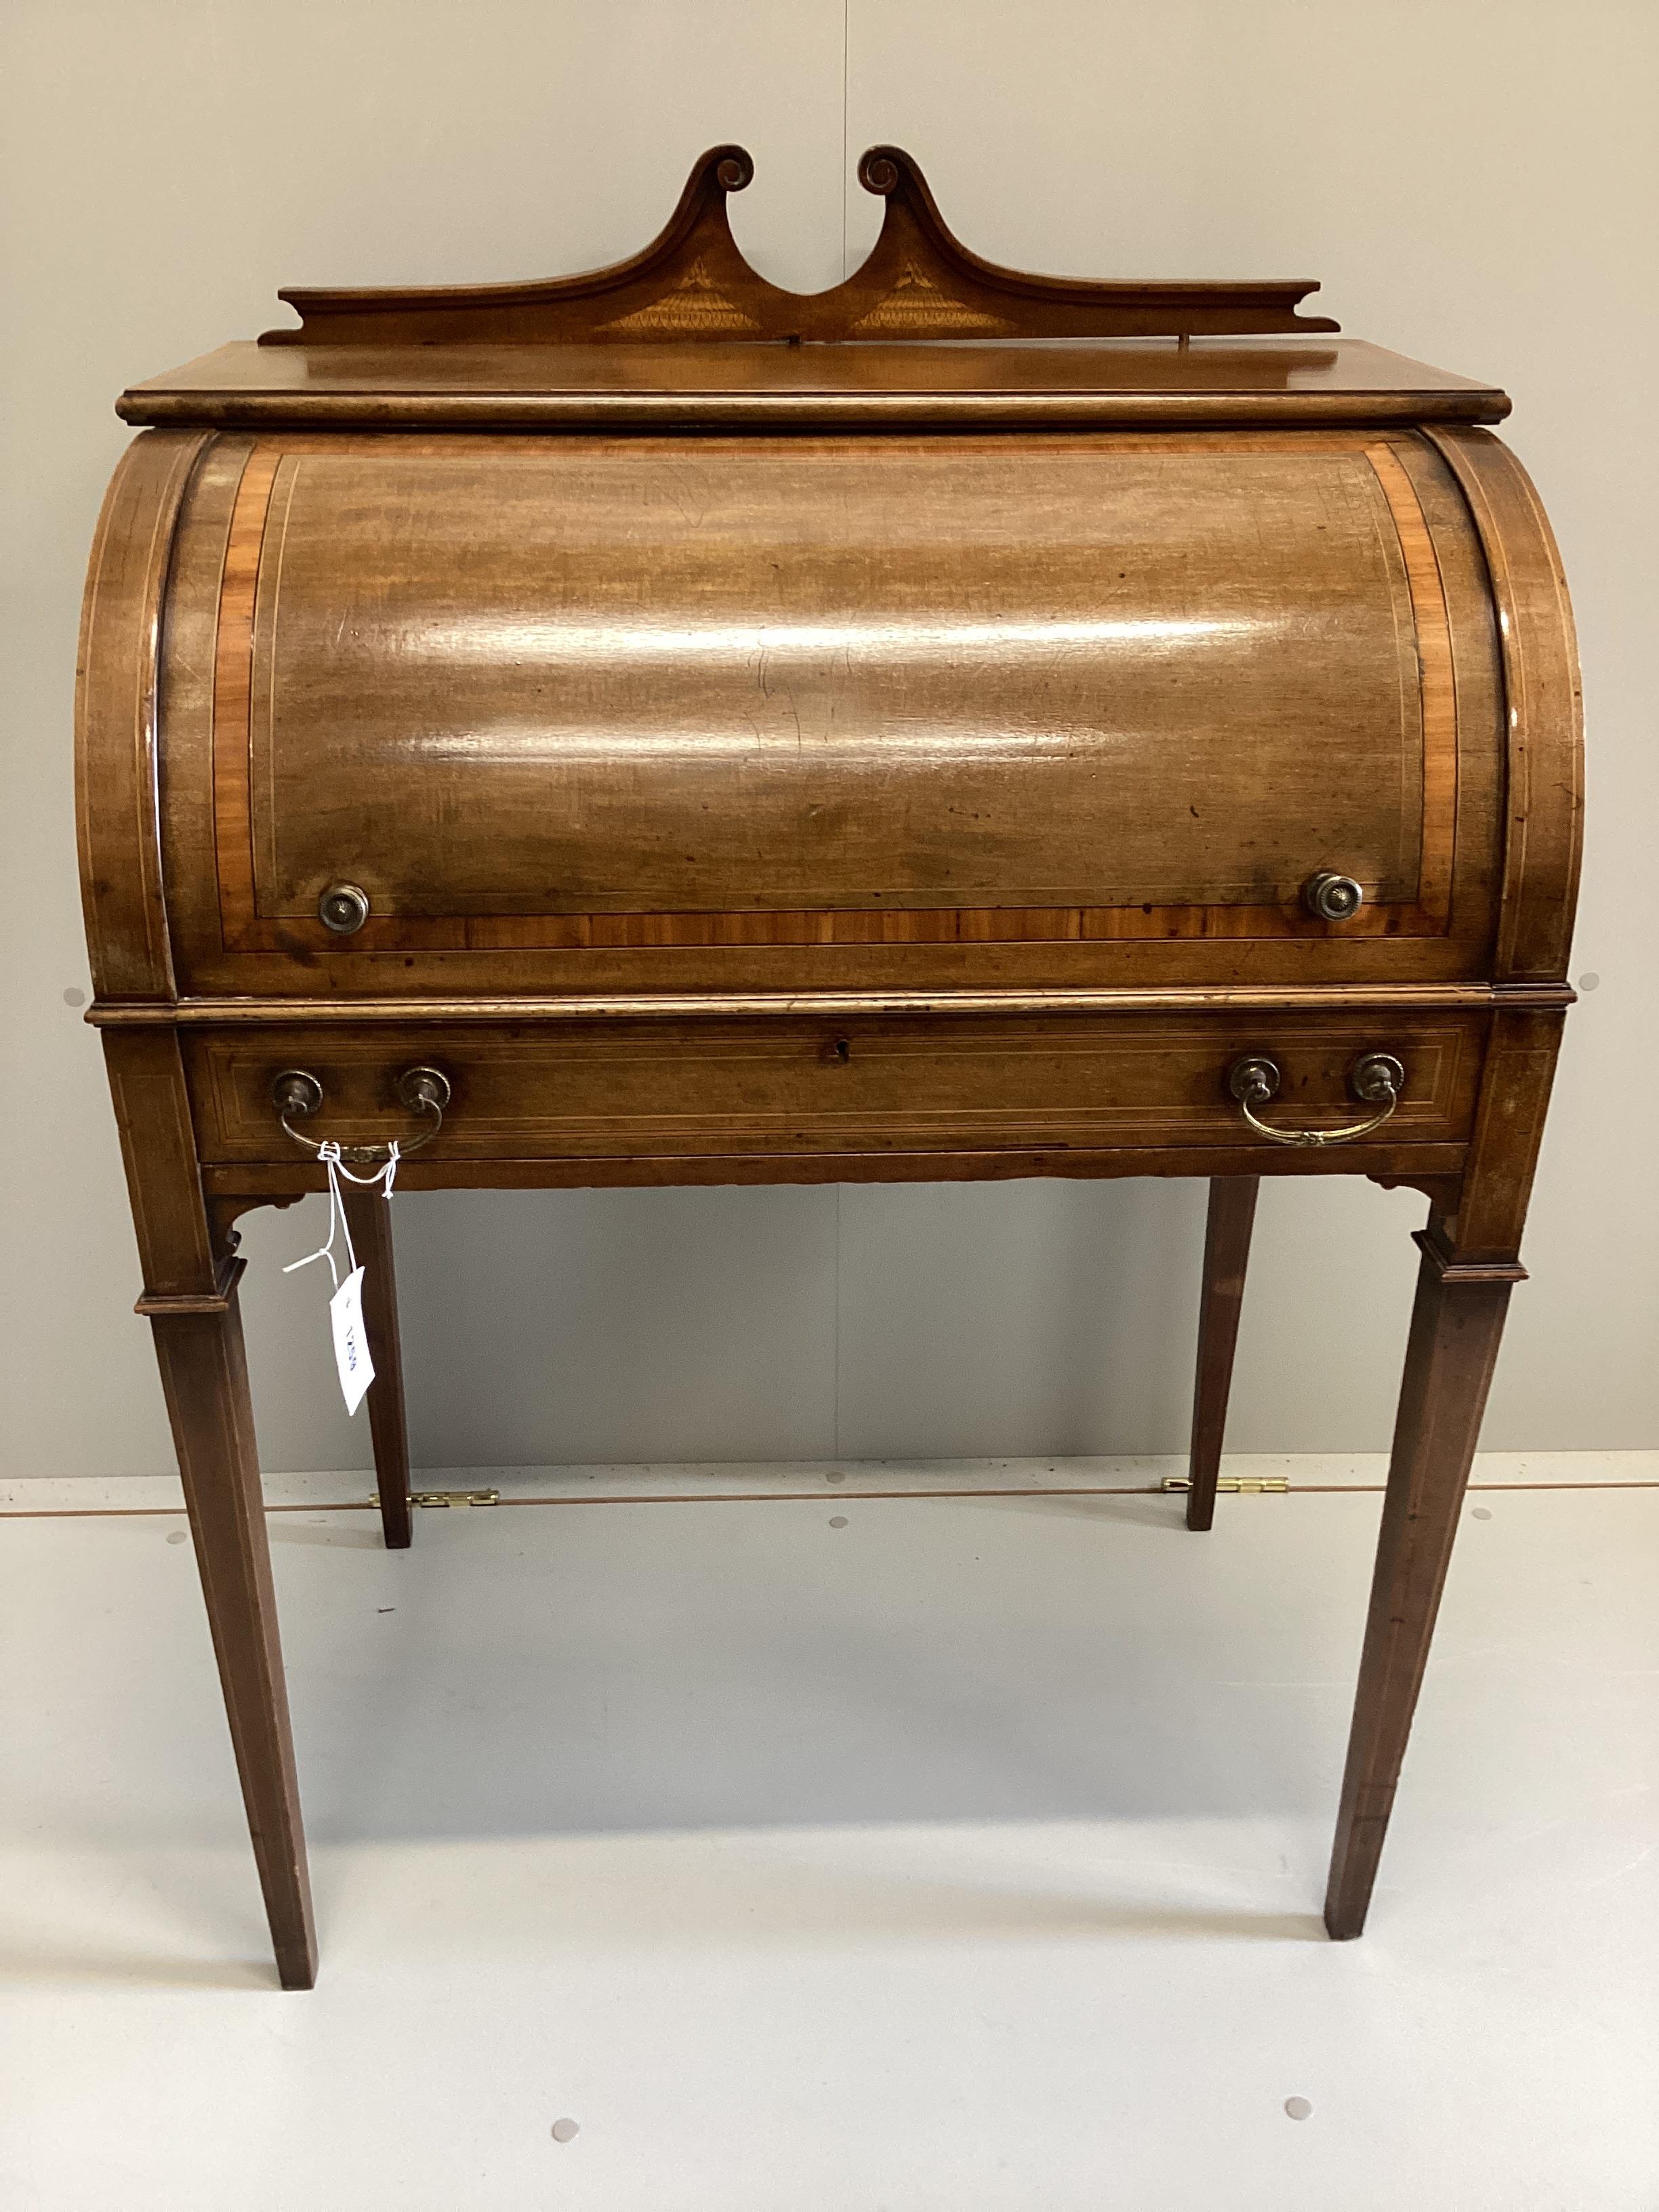 A small Edwardian satinwood banded mahogany cylinder bureau, width 73cm, depth 49cm, height 94cm